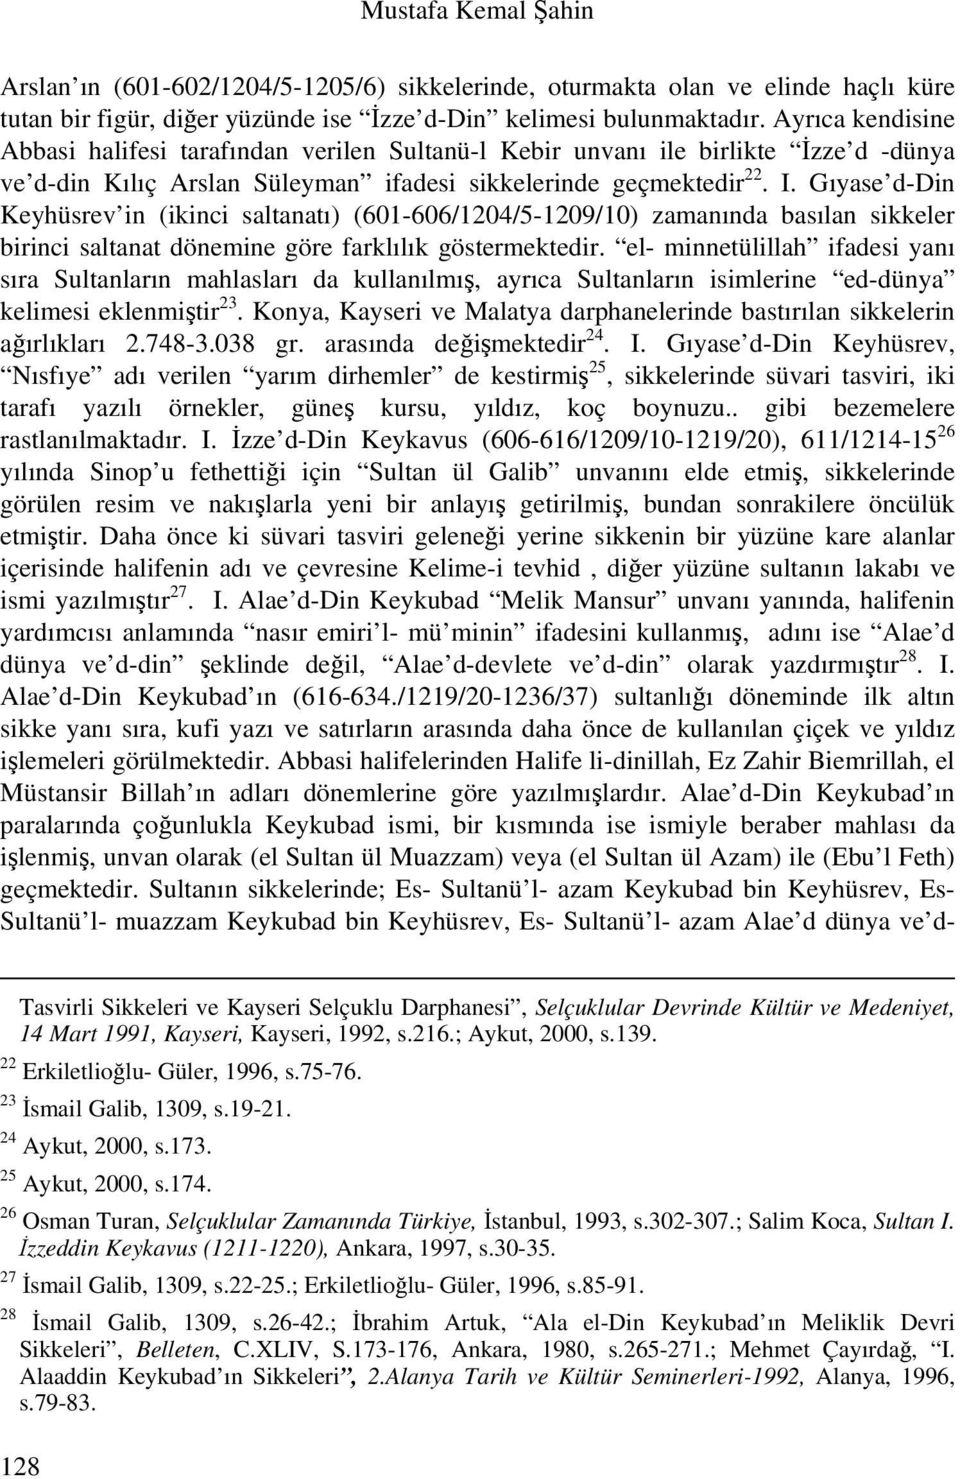 Gıyase d-din Keyhüsrev in (ikinci saltanatı) (601-606/1204/5-1209/10) zamanında basılan sikkeler birinci saltanat dönemine göre farklılık göstermektedir.